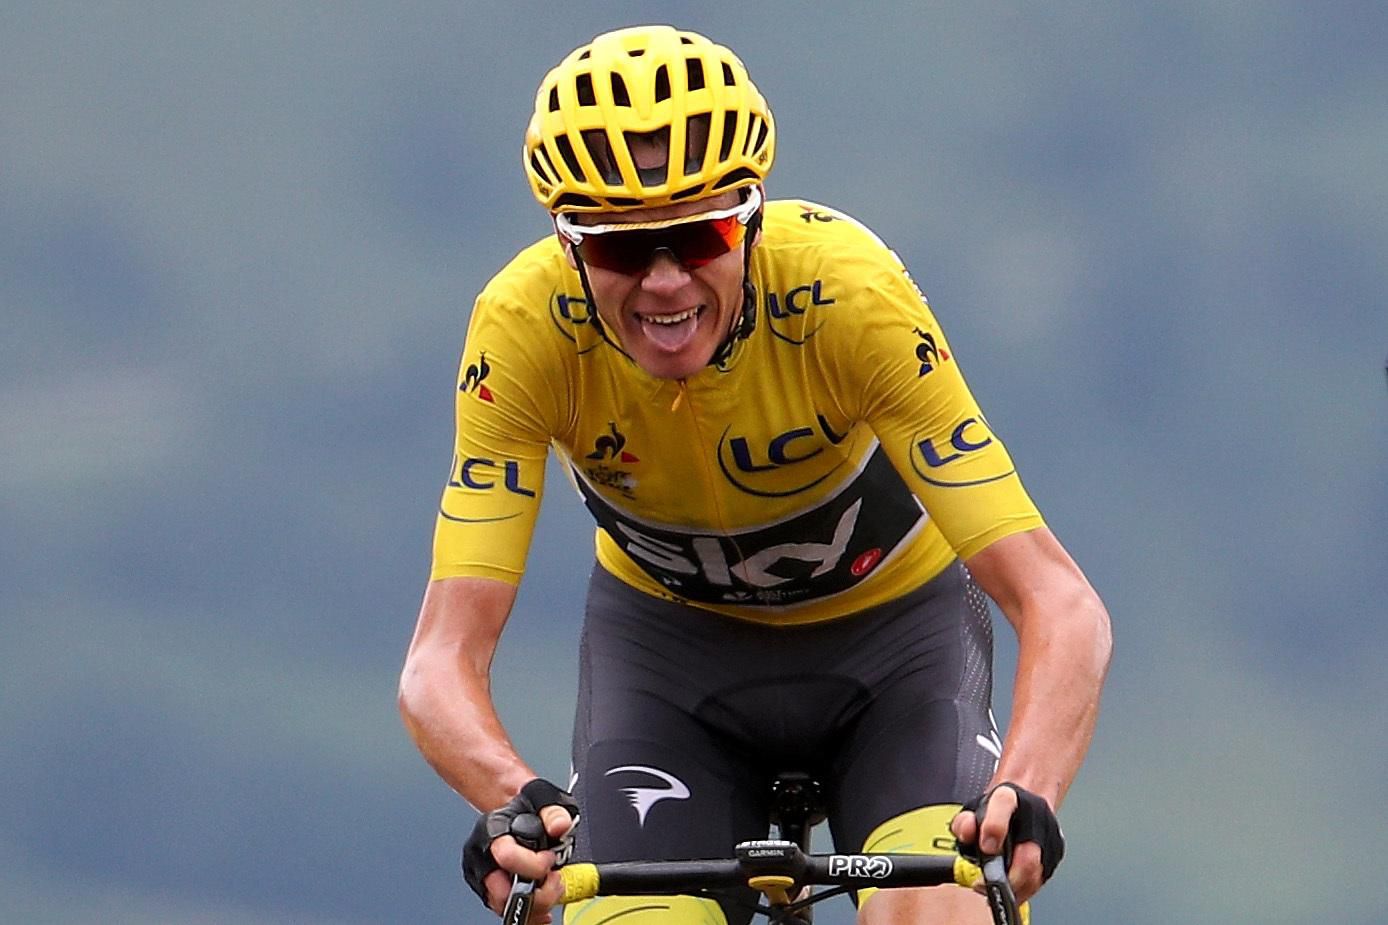 Christopher Froome, Tour de France 2017